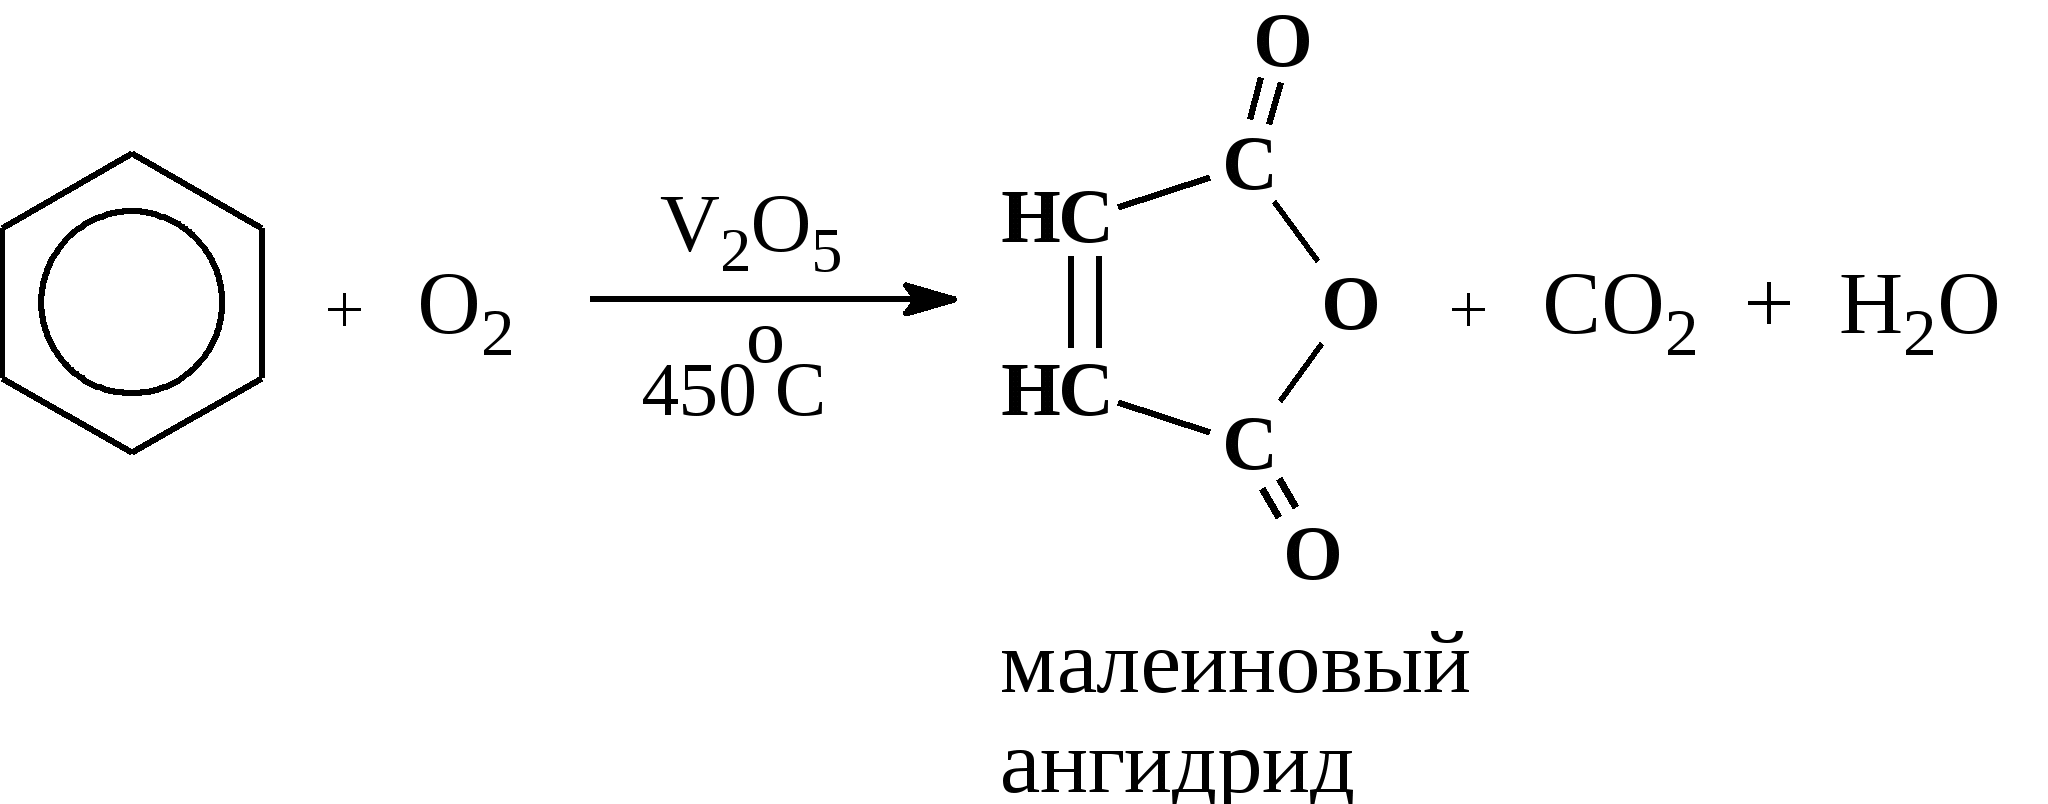 Каталитическое окисление бензола кислородом. Окисление бензола v2o5. Окисление бензола кислородом при катализаторе v2o5. Каталитическое окисление метилбензола. Горение бензола уравнение